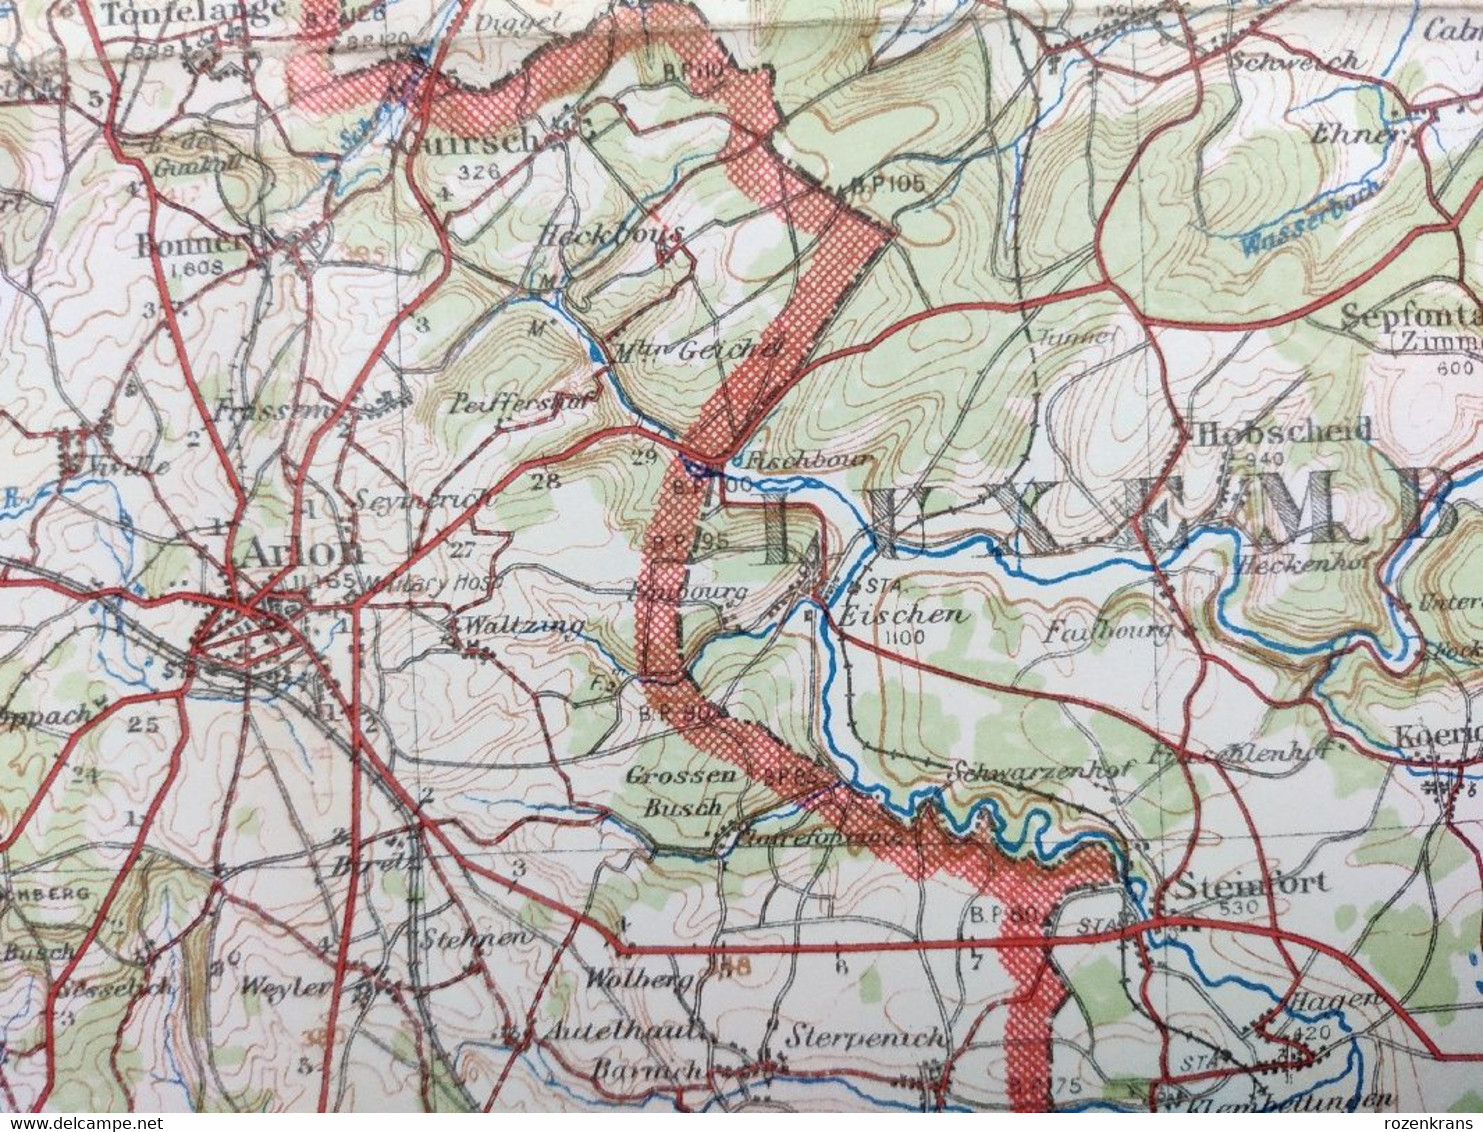 Carte Topographique Militaire UK War Office 1916 World War 1 WW1 Luxembourg Arlon Bahay Martelange Marbehan Oberkorn - Topographische Karten